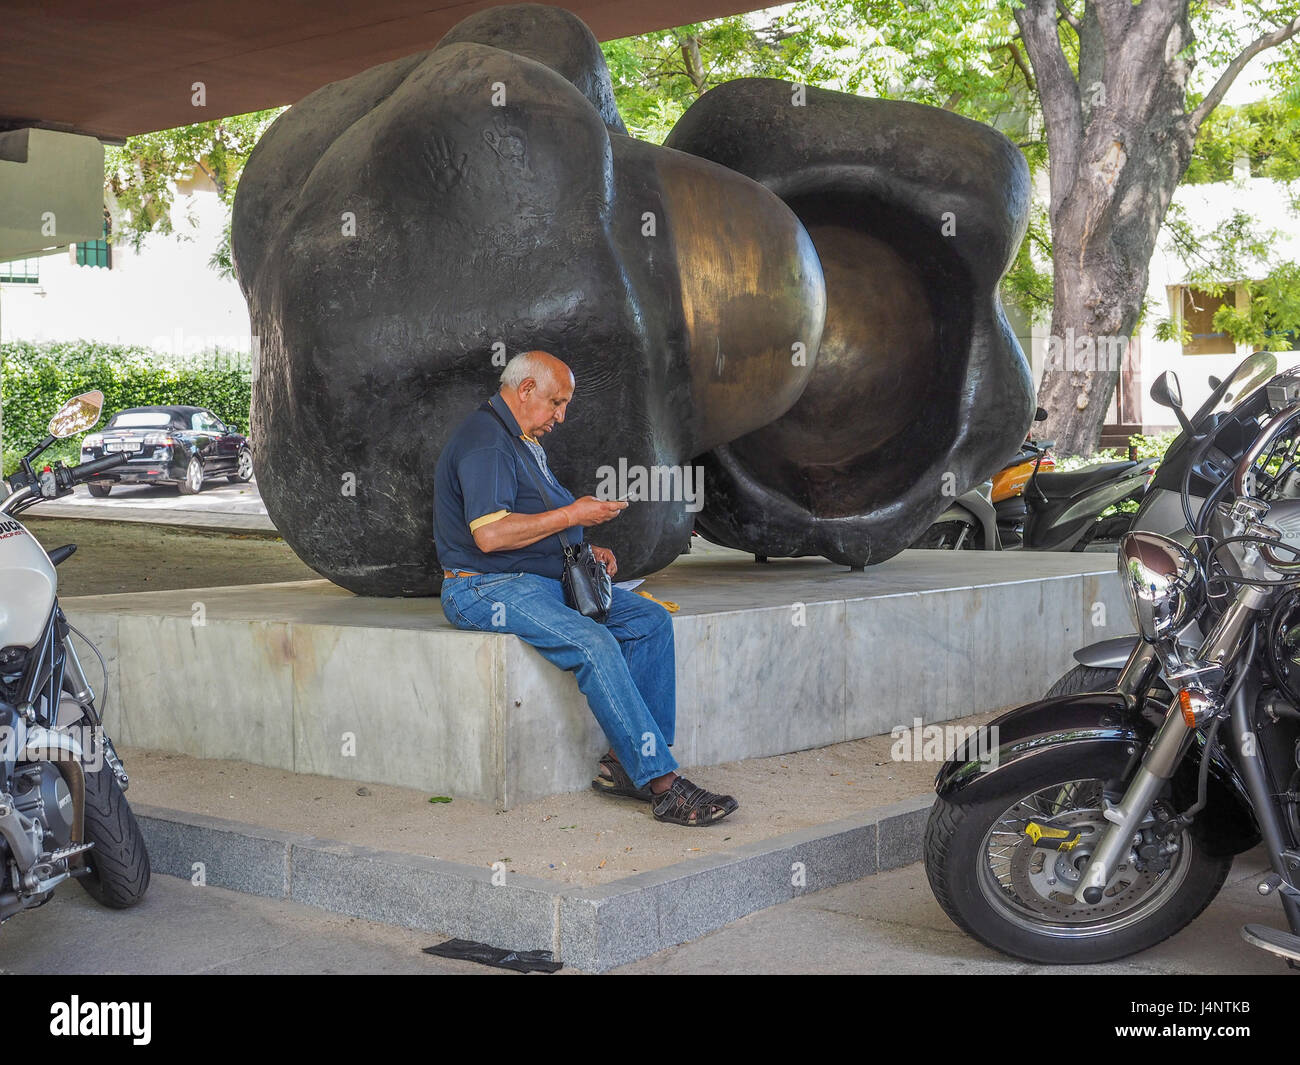 Una vista de Unidades escultura de Pablo Serrano en el jardín al aire libre parque museo museo de escultura al aire libre Madrid hombre persona sentada mirando Foto de stock